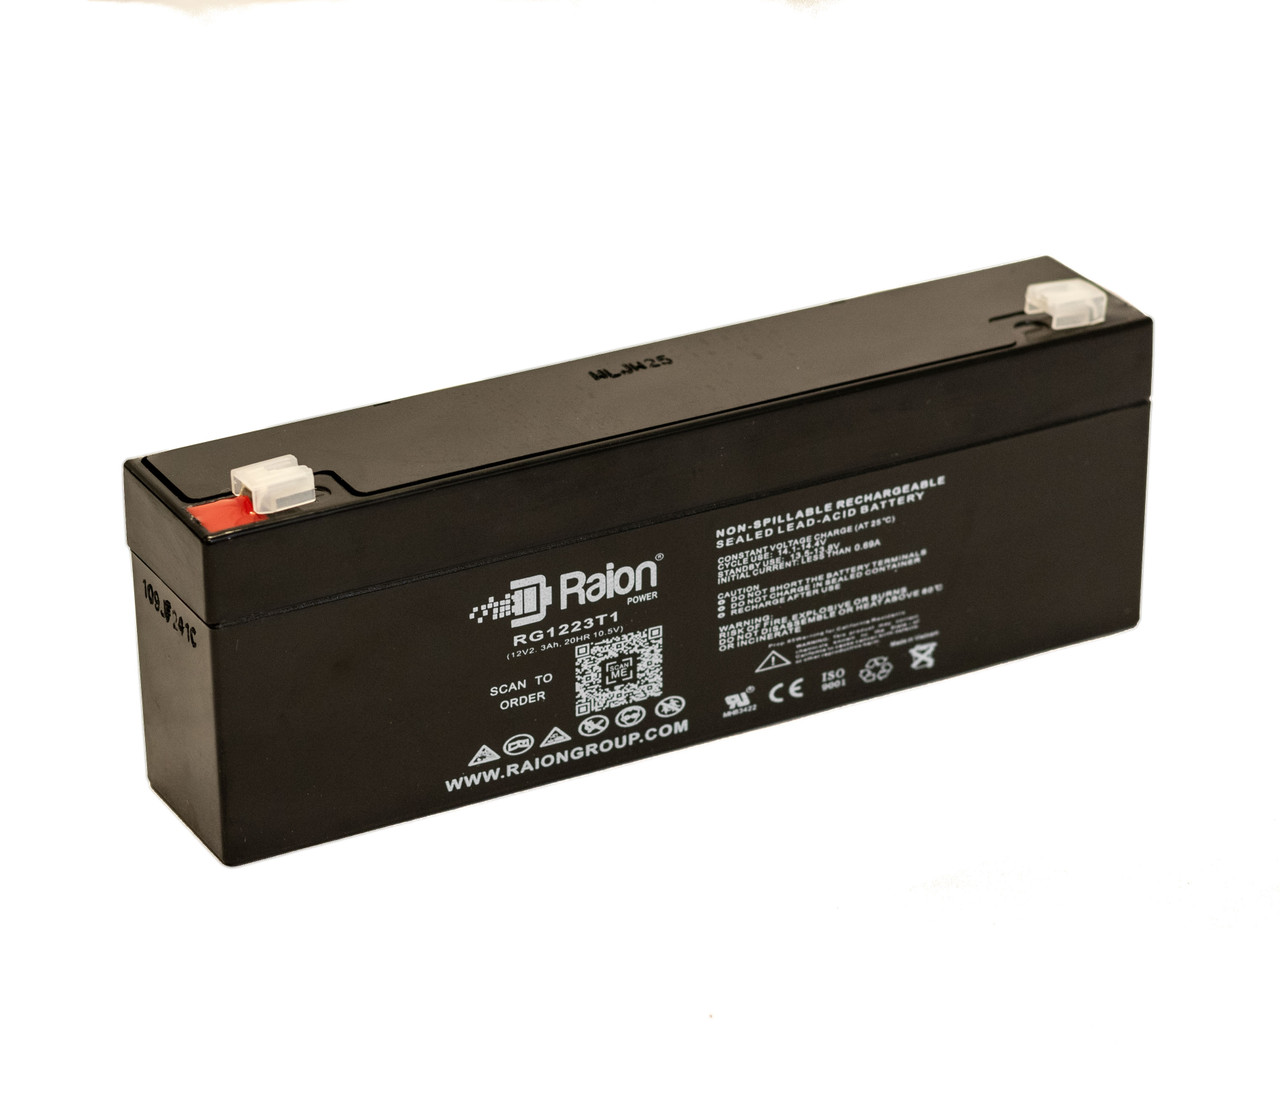 Raion Power RG1223T1 Replacement Battery for Landport LP12-2.1